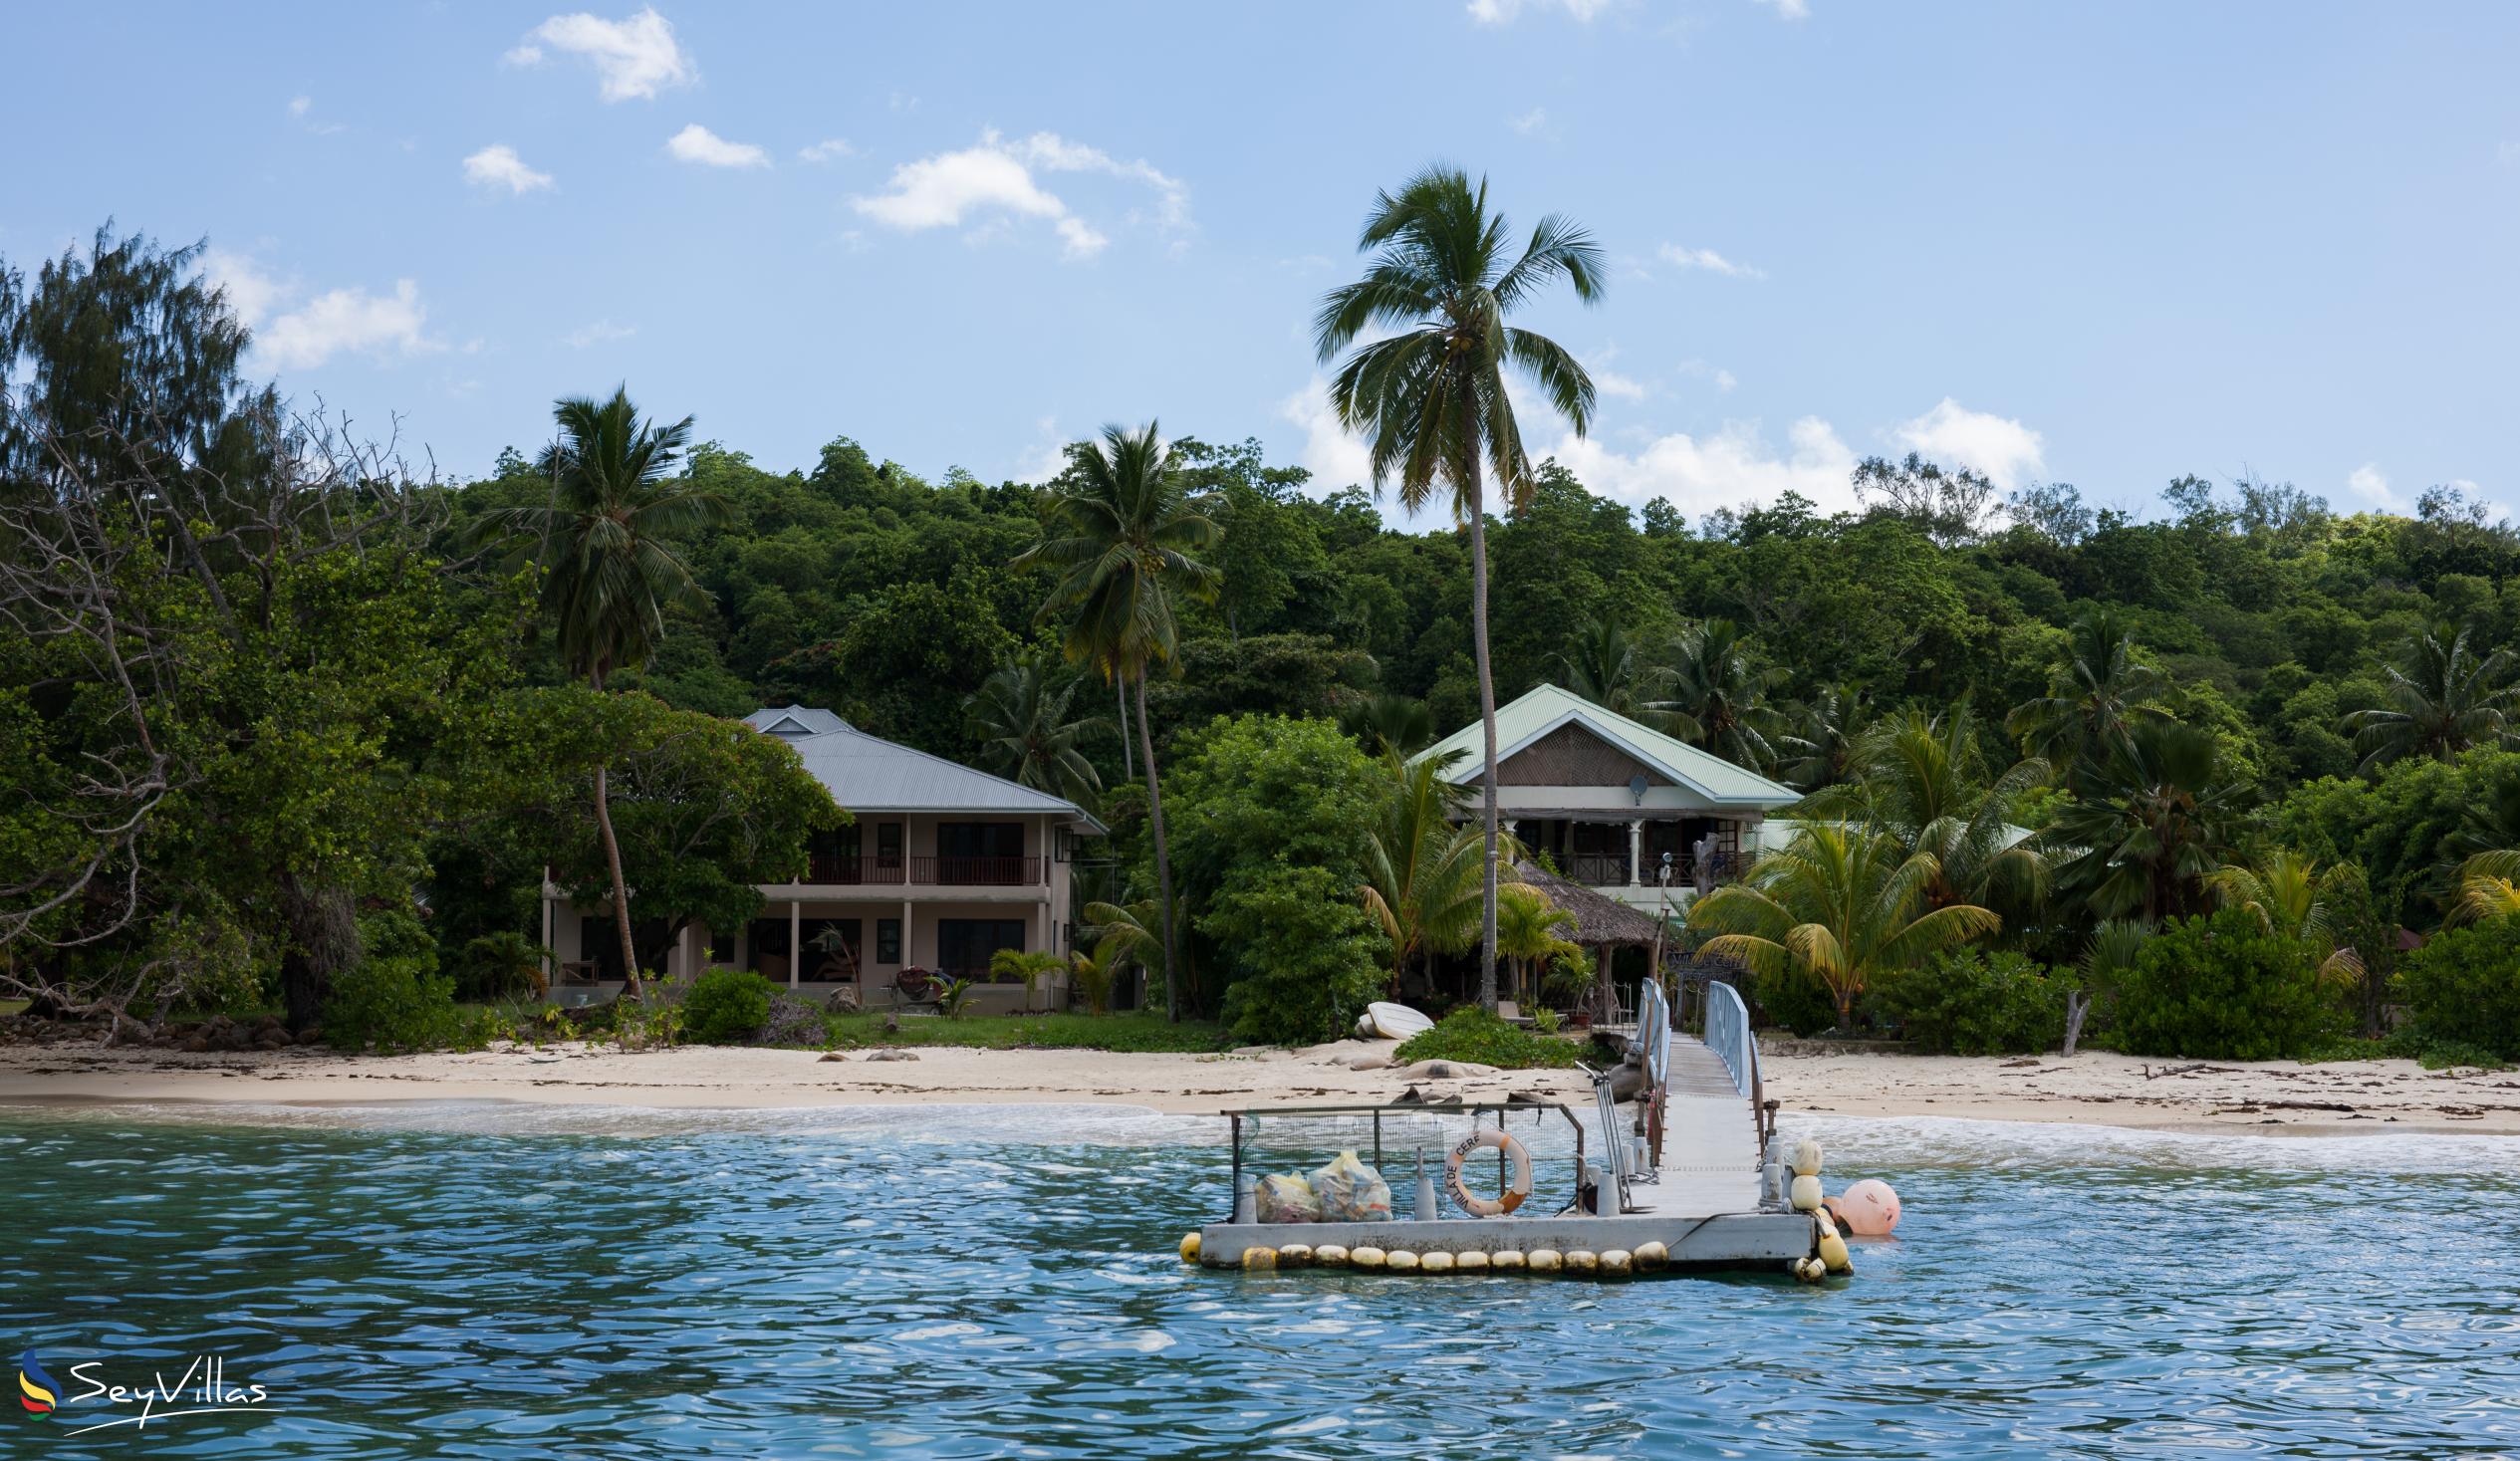 Foto 46: Villa de Cerf - Esterno - Cerf Island (Seychelles)